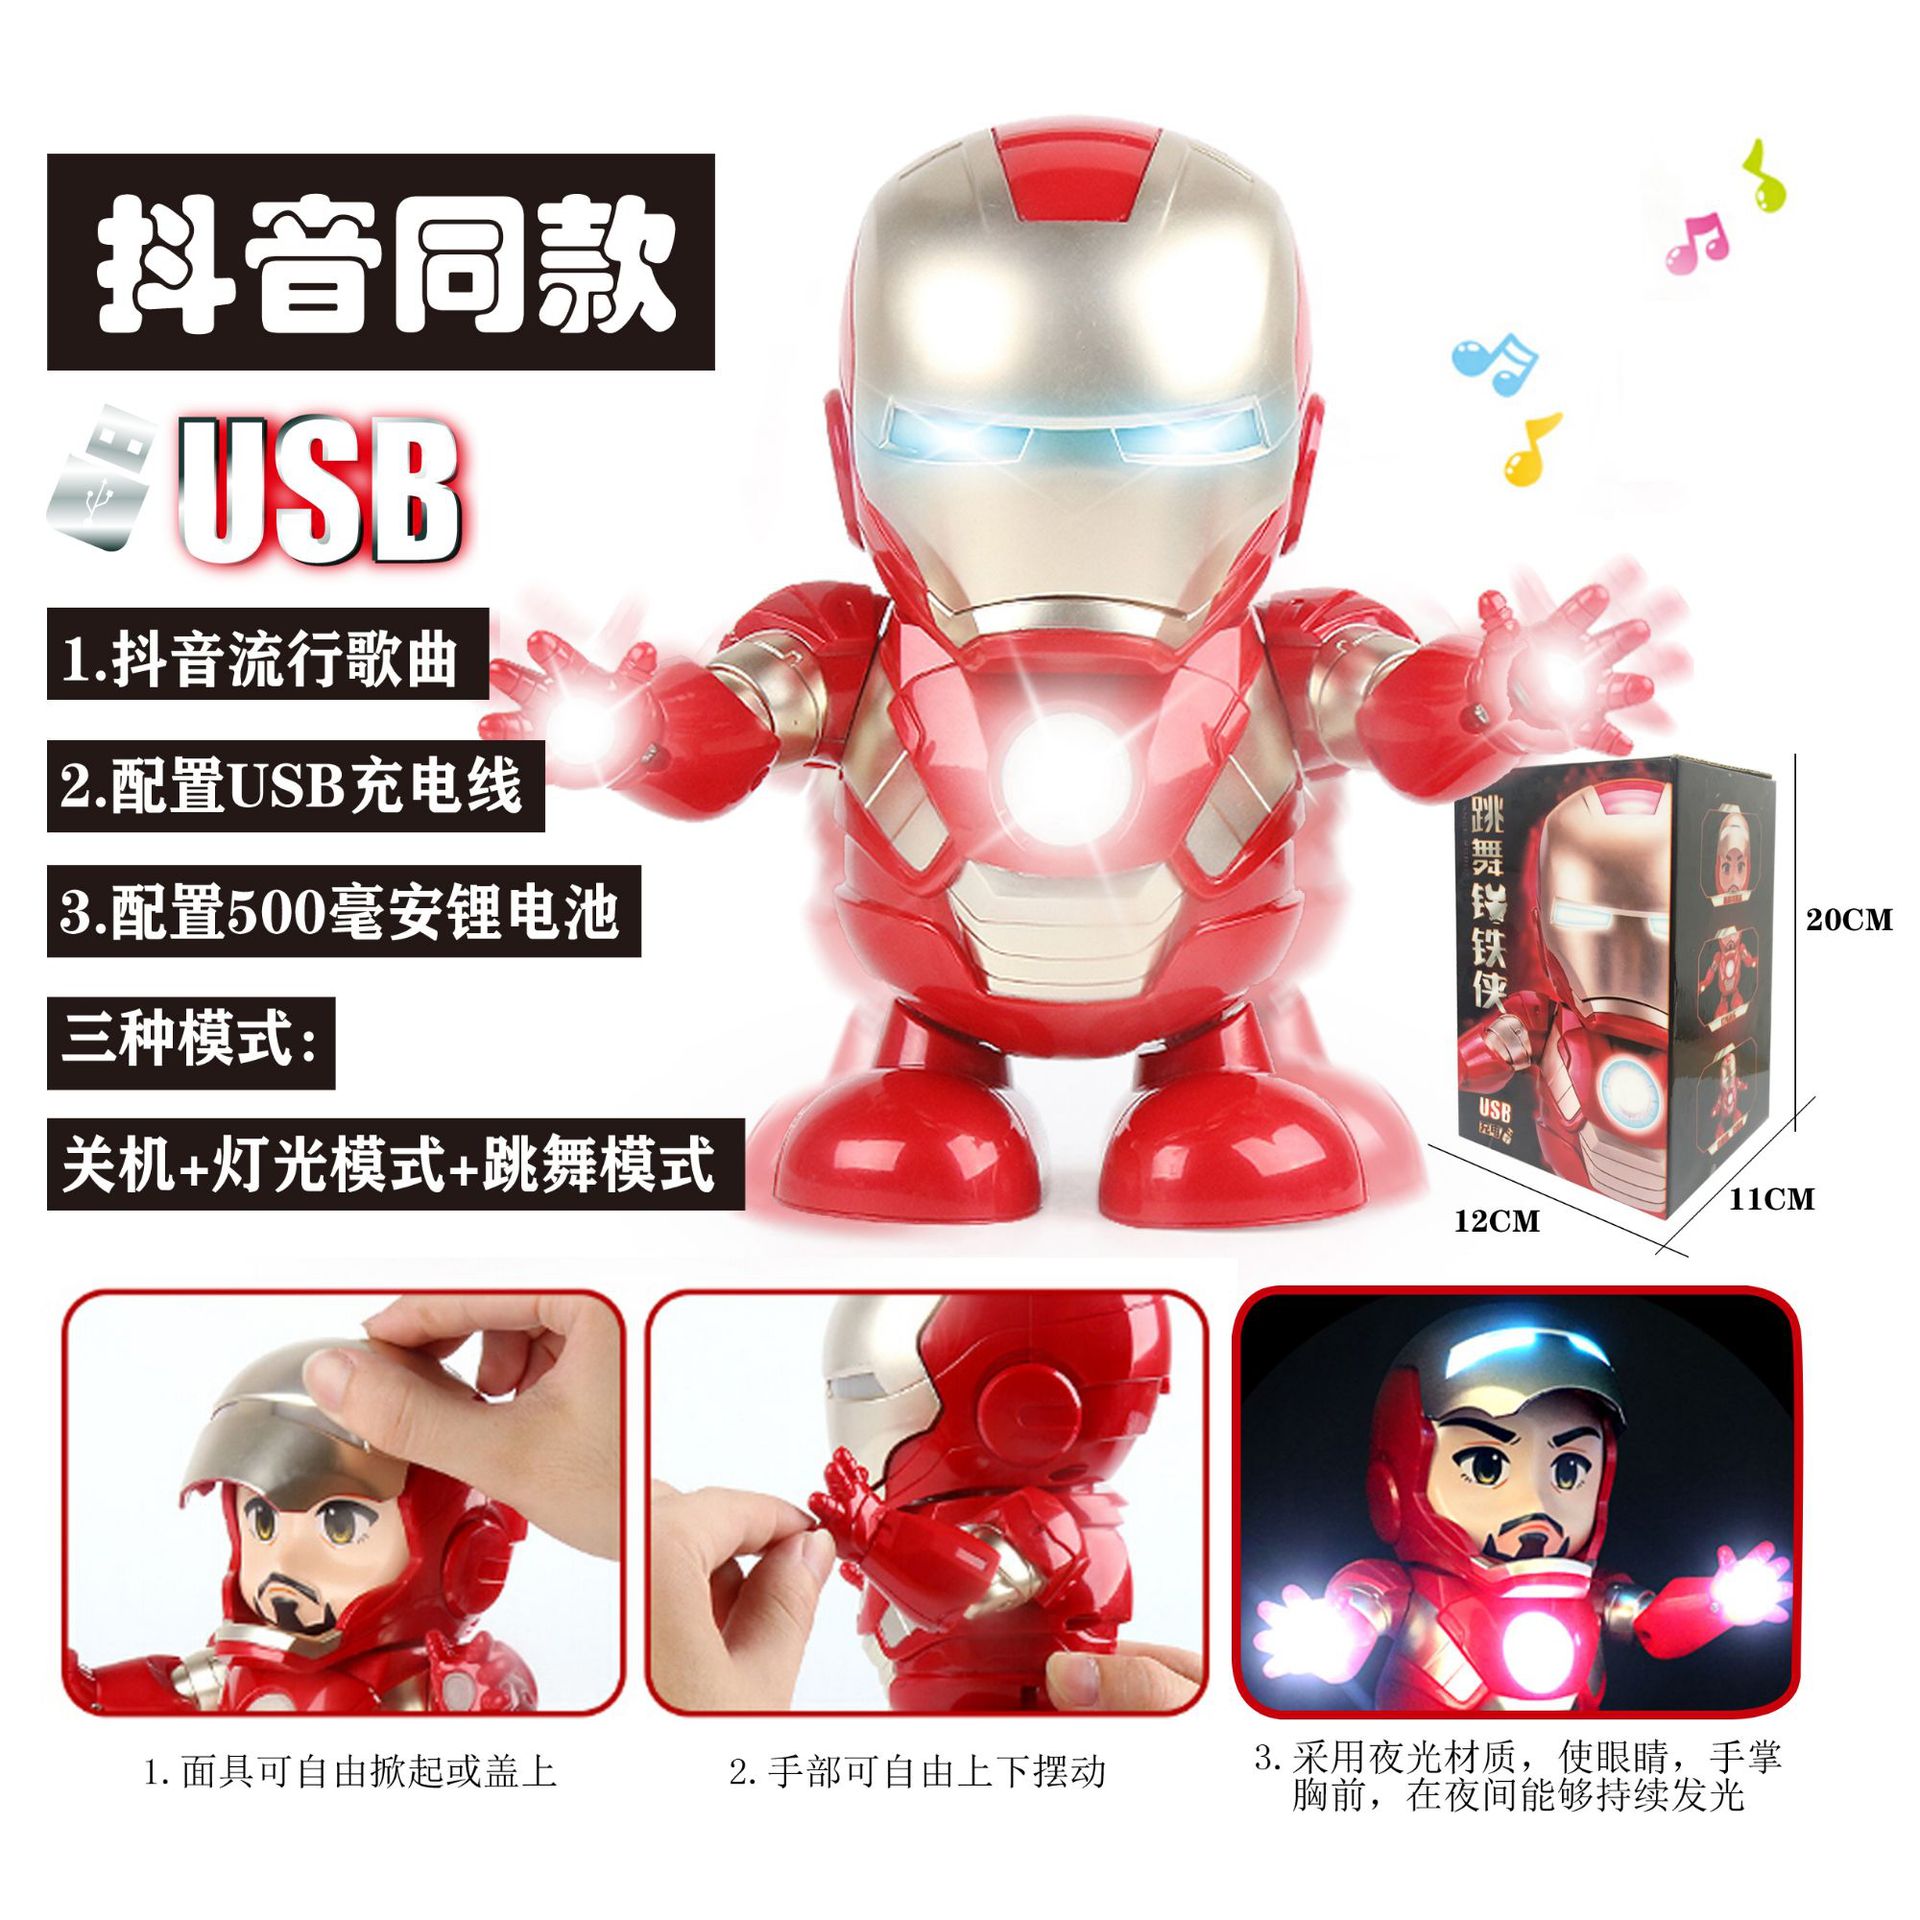 会跳舞唱歌的钢铁侠机器人抖音同款玩具灯光音乐儿童电动男孩礼物 - 图2